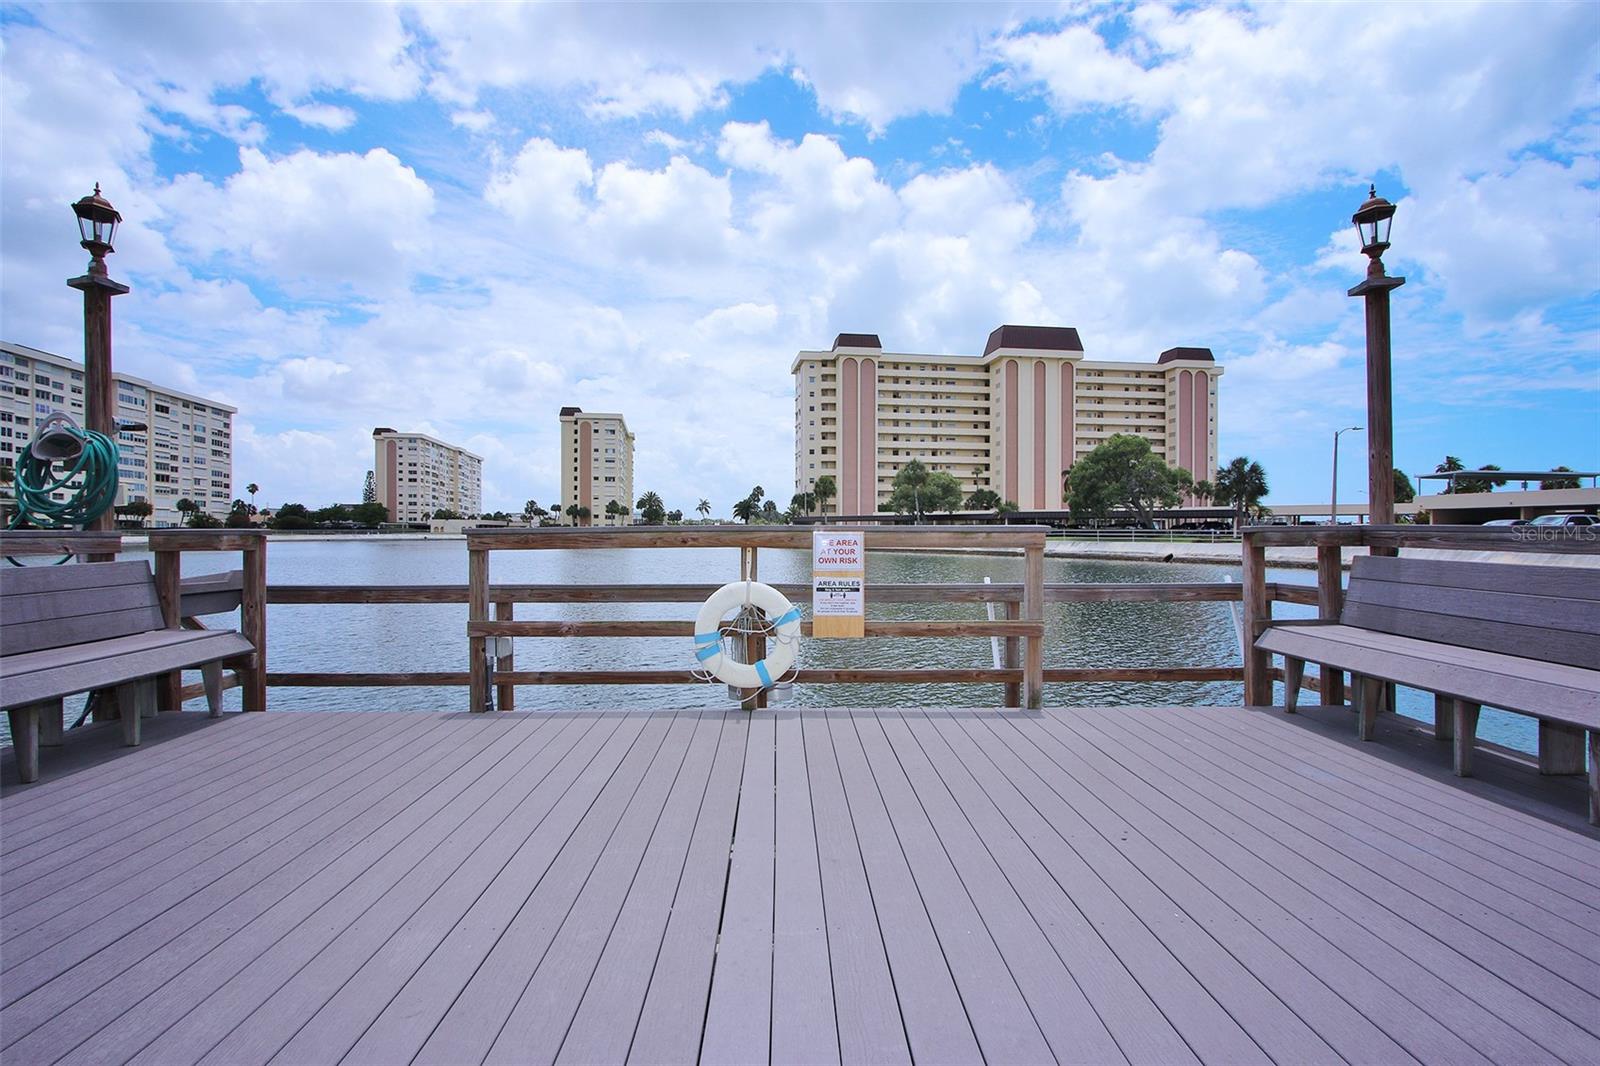 This pier overlooks the lagoon.